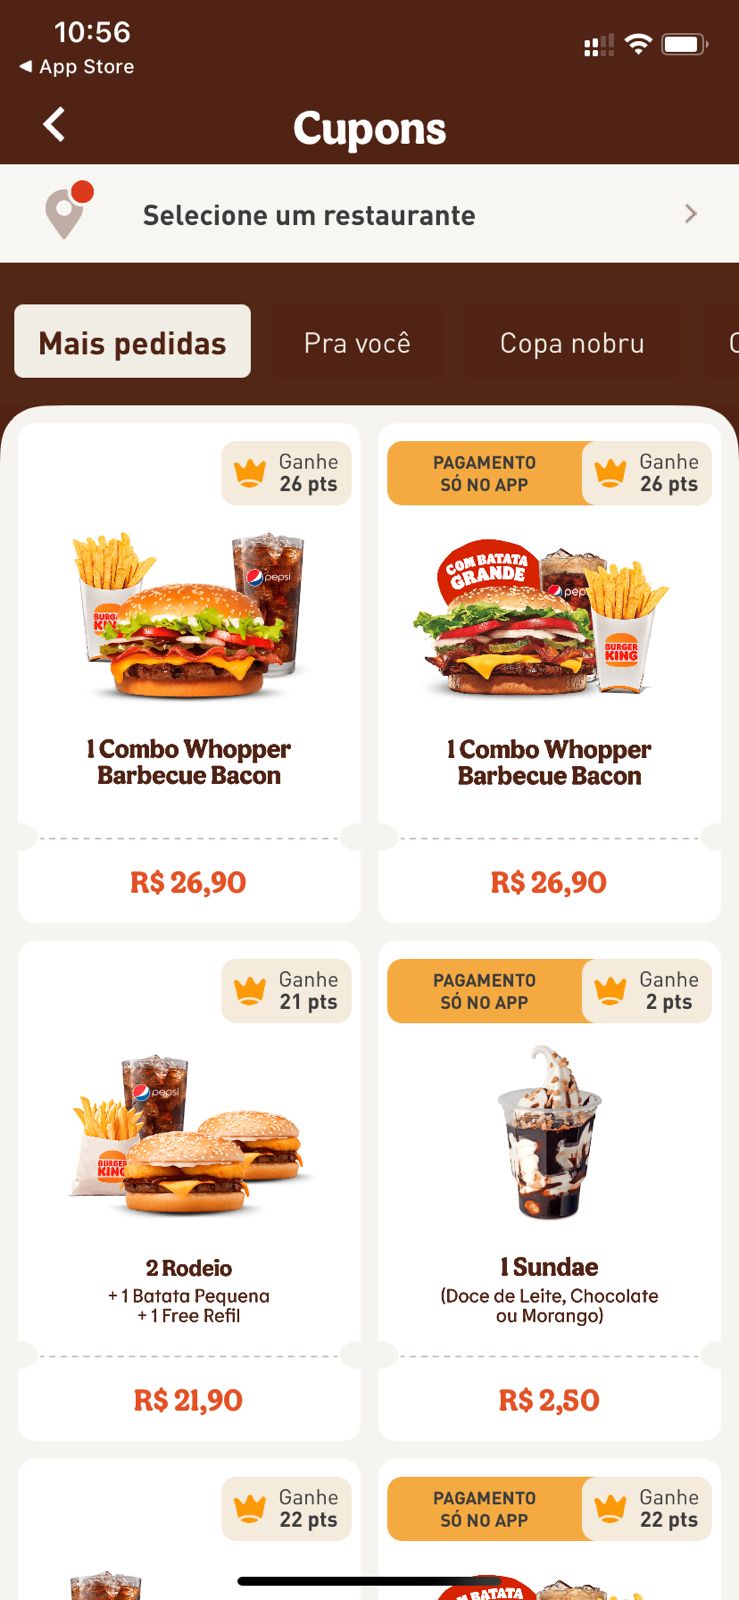 BK Todo Dia': Promoção do Burger King oferece sanduíches por R$ 9,90 - GKPB  - Geek Publicitário - cardapio bk